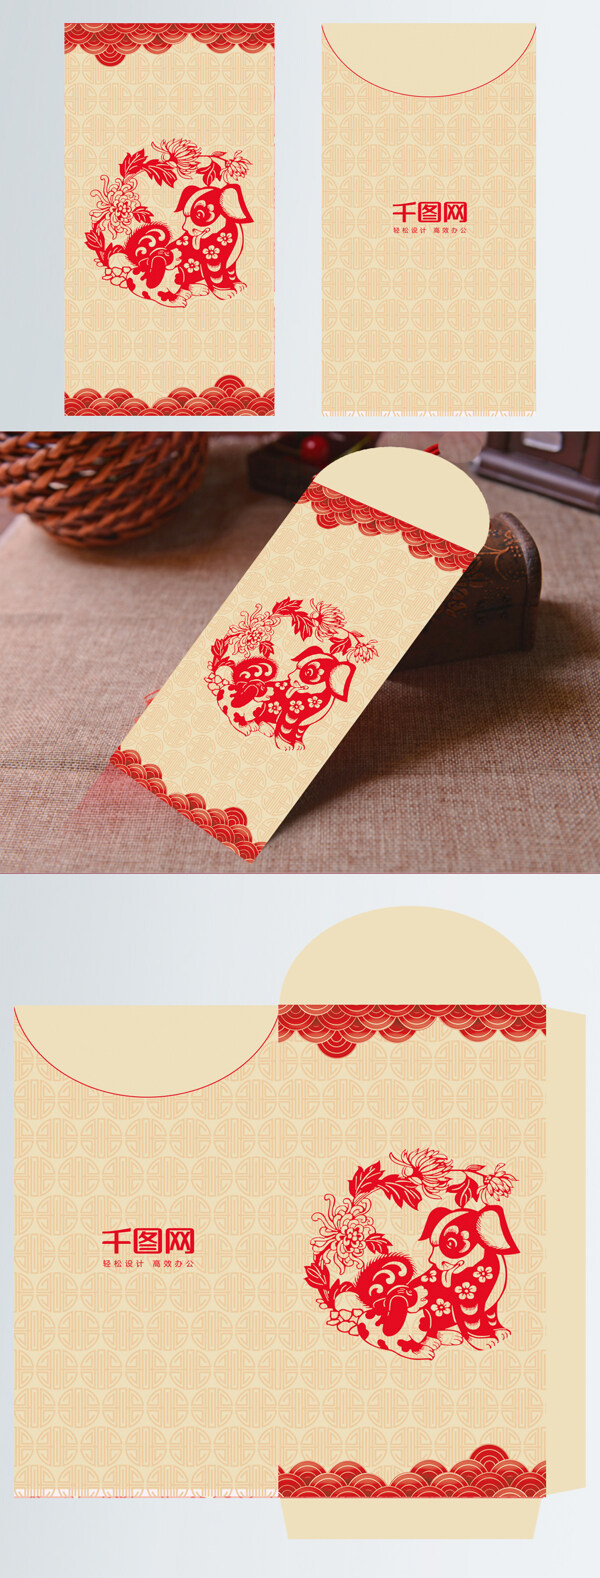 简约中国风传统新年红包设计模板